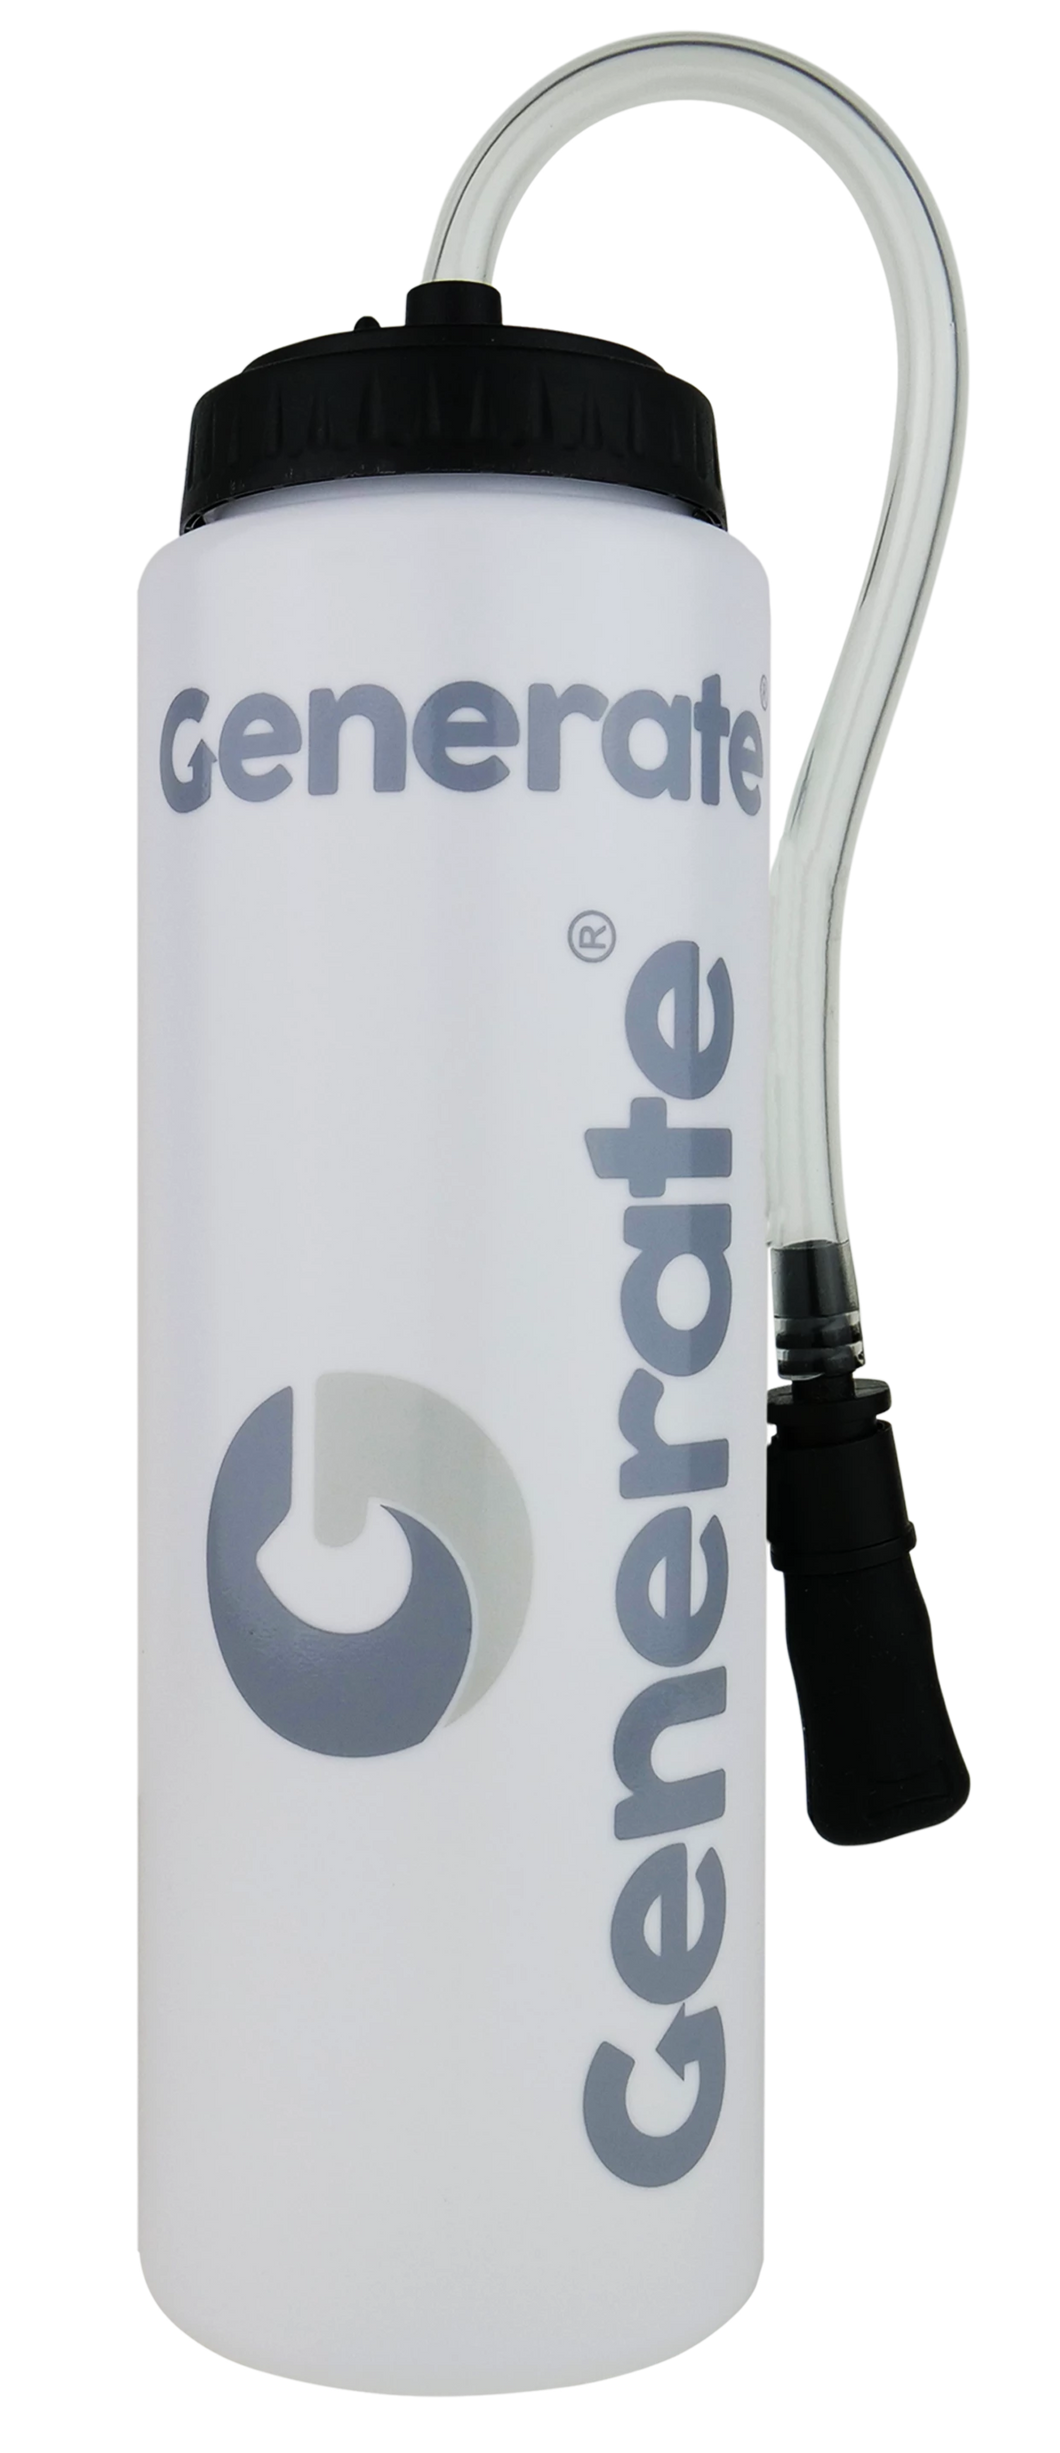 Generate “Pit Pro” Water Bottle - drinkgenerate